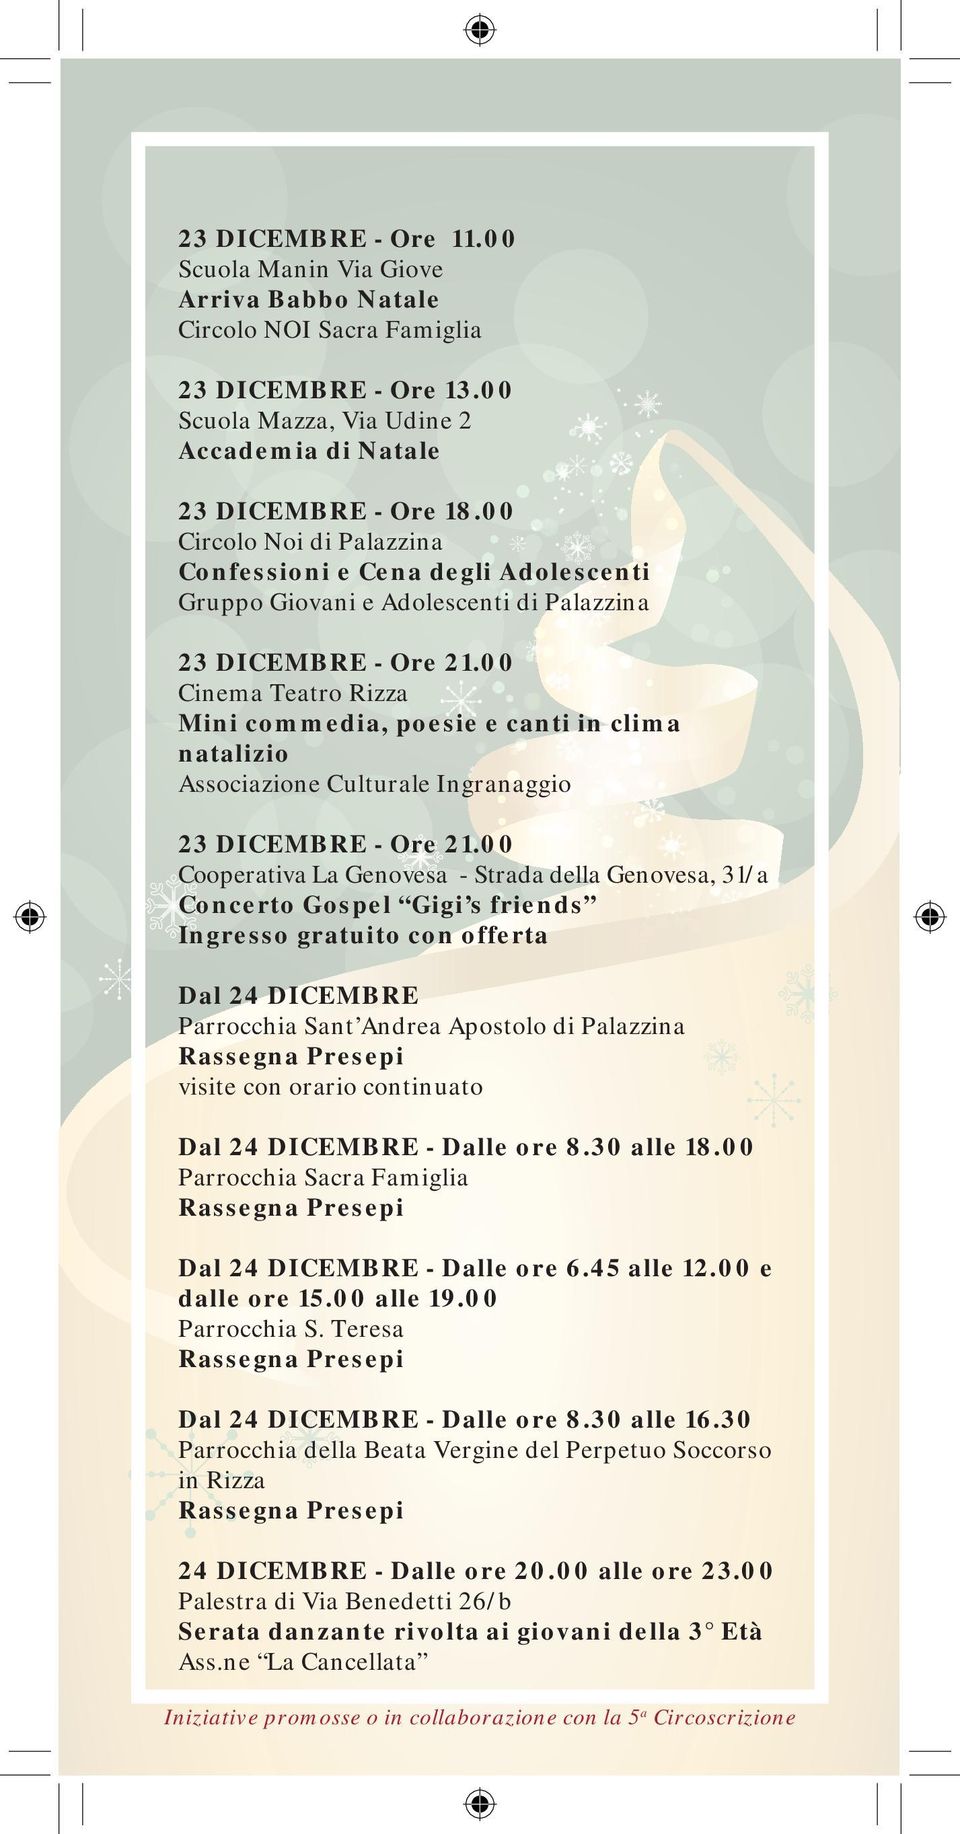 00 Cinema Teatro Rizza Mini commedia, poesie e canti in clima natalizio Associazione Culturale Ingranaggio 23 DICEMBRE - Ore 21.